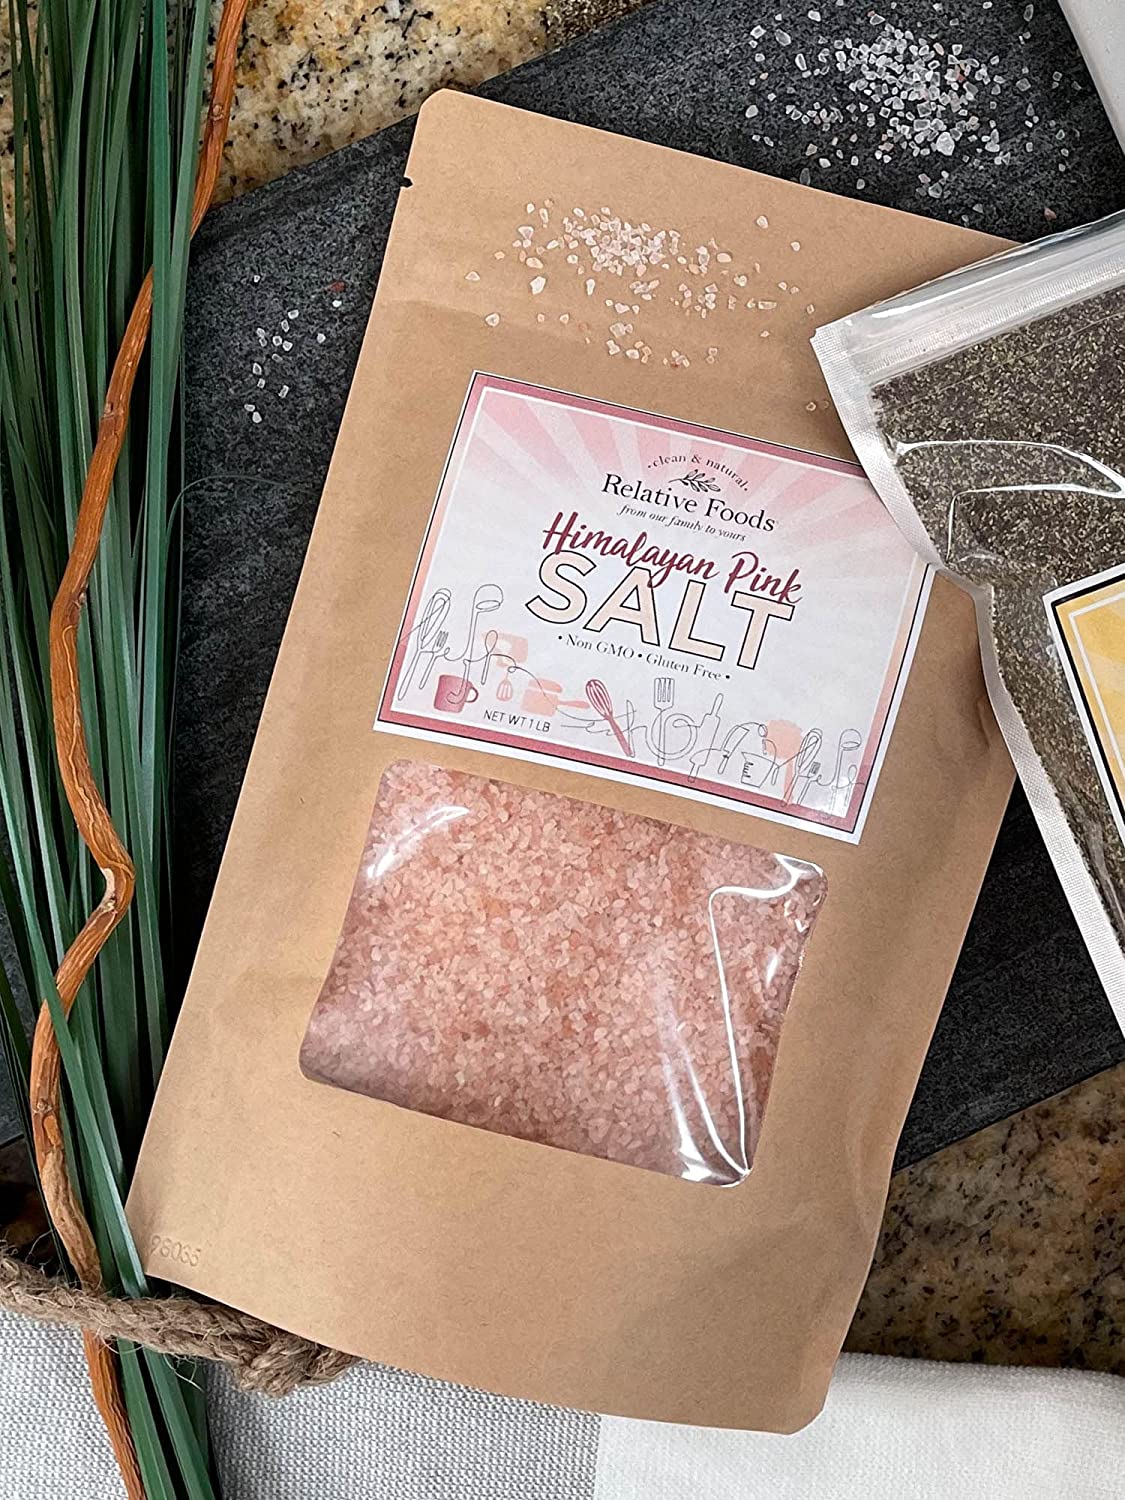 Salt - Pink Himalayan - Non GMO, Gluten Free, Kosher - 1 Lb.